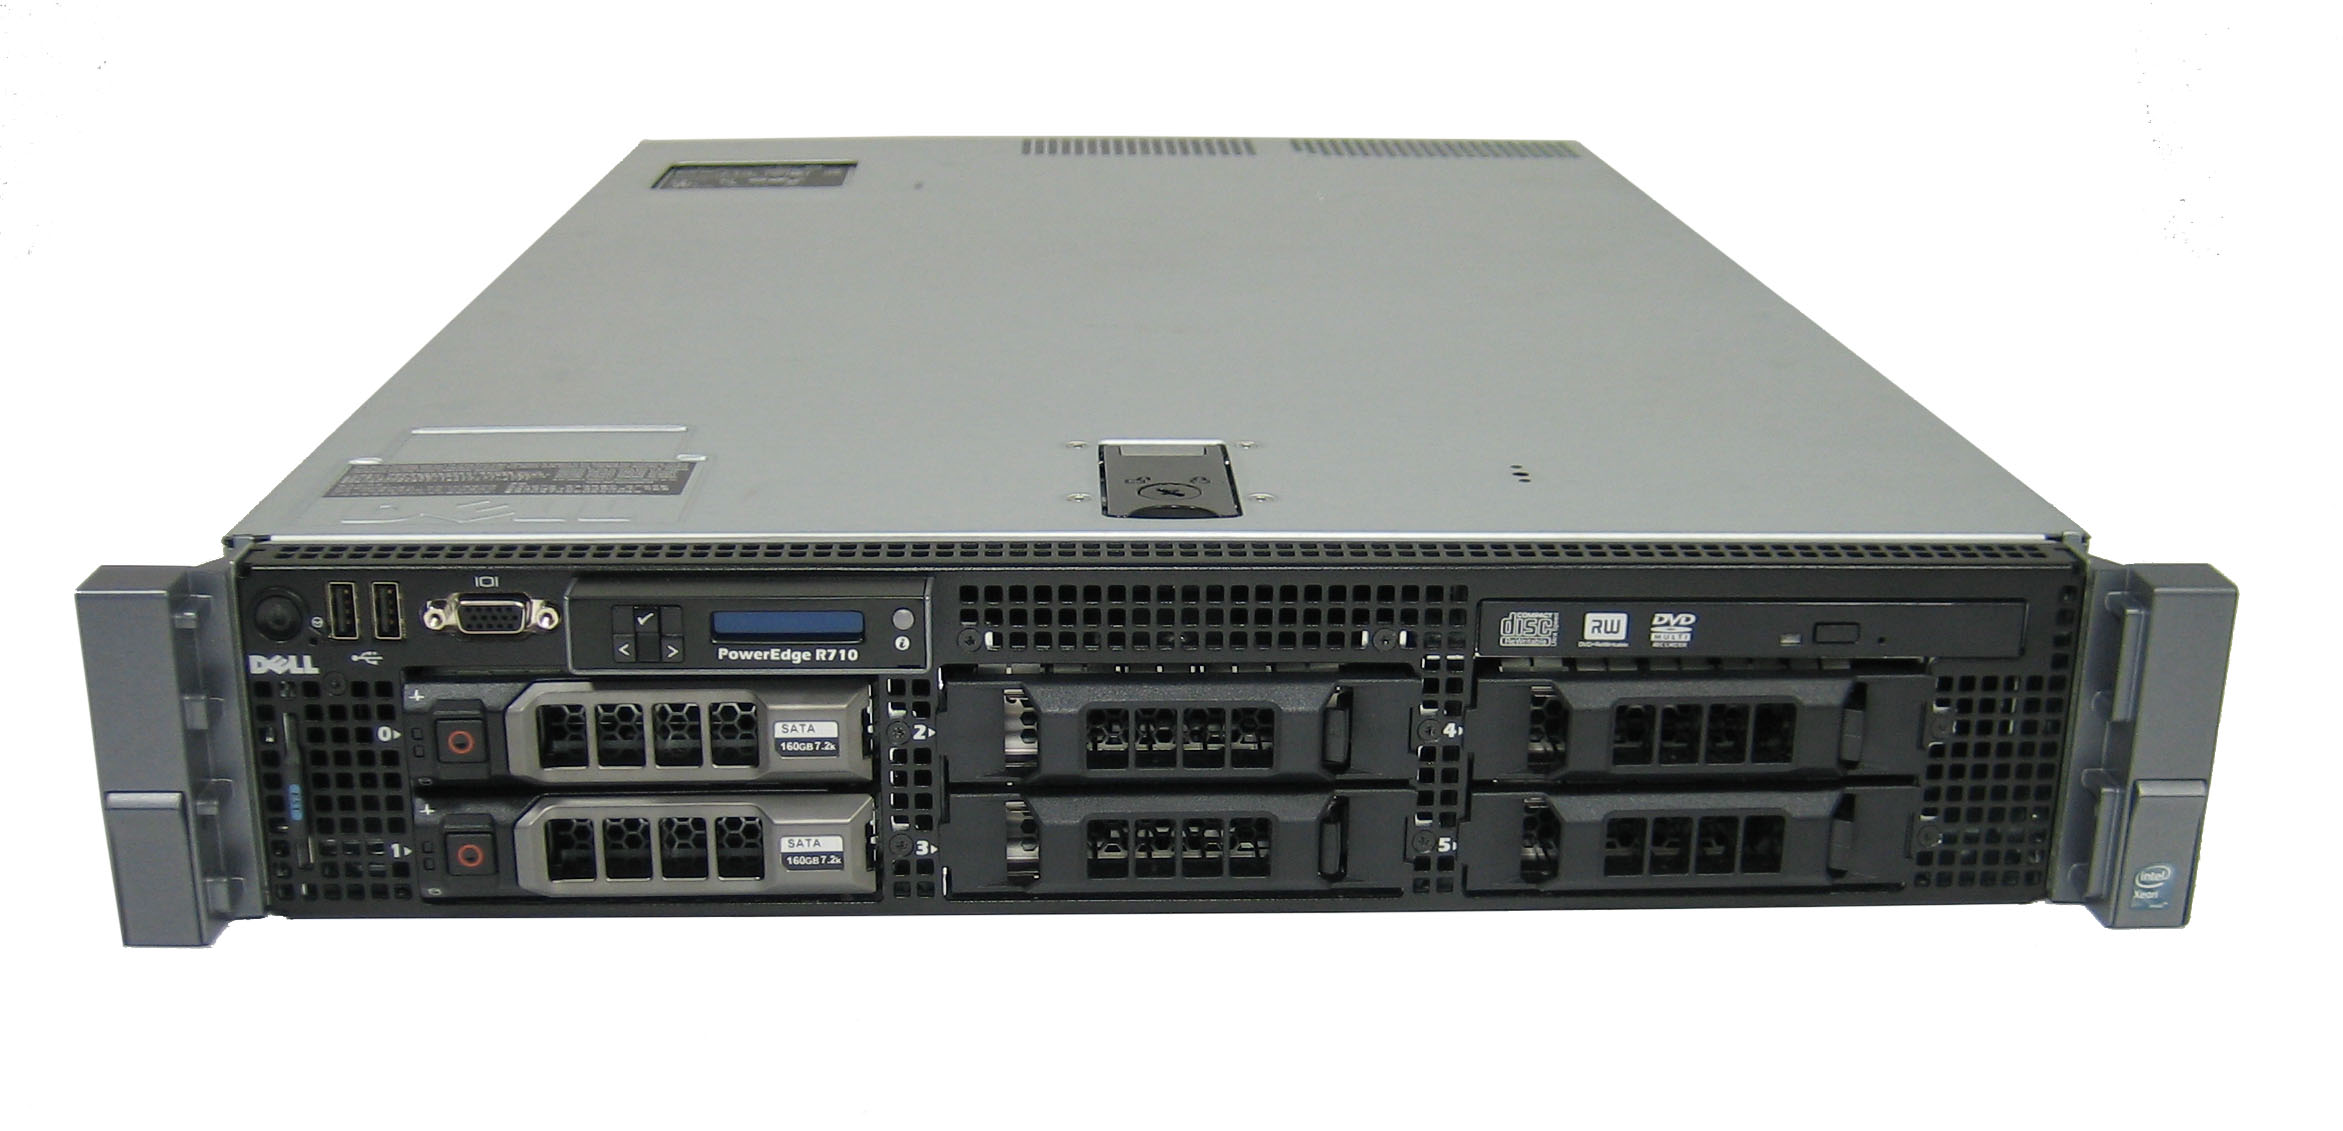 Máy Chủ Server Dell Poweredge R710 E5620 2.4Ghz Chính Hãng, Chất Lượng, Giá  Rẻ Tại Thế Giới Số